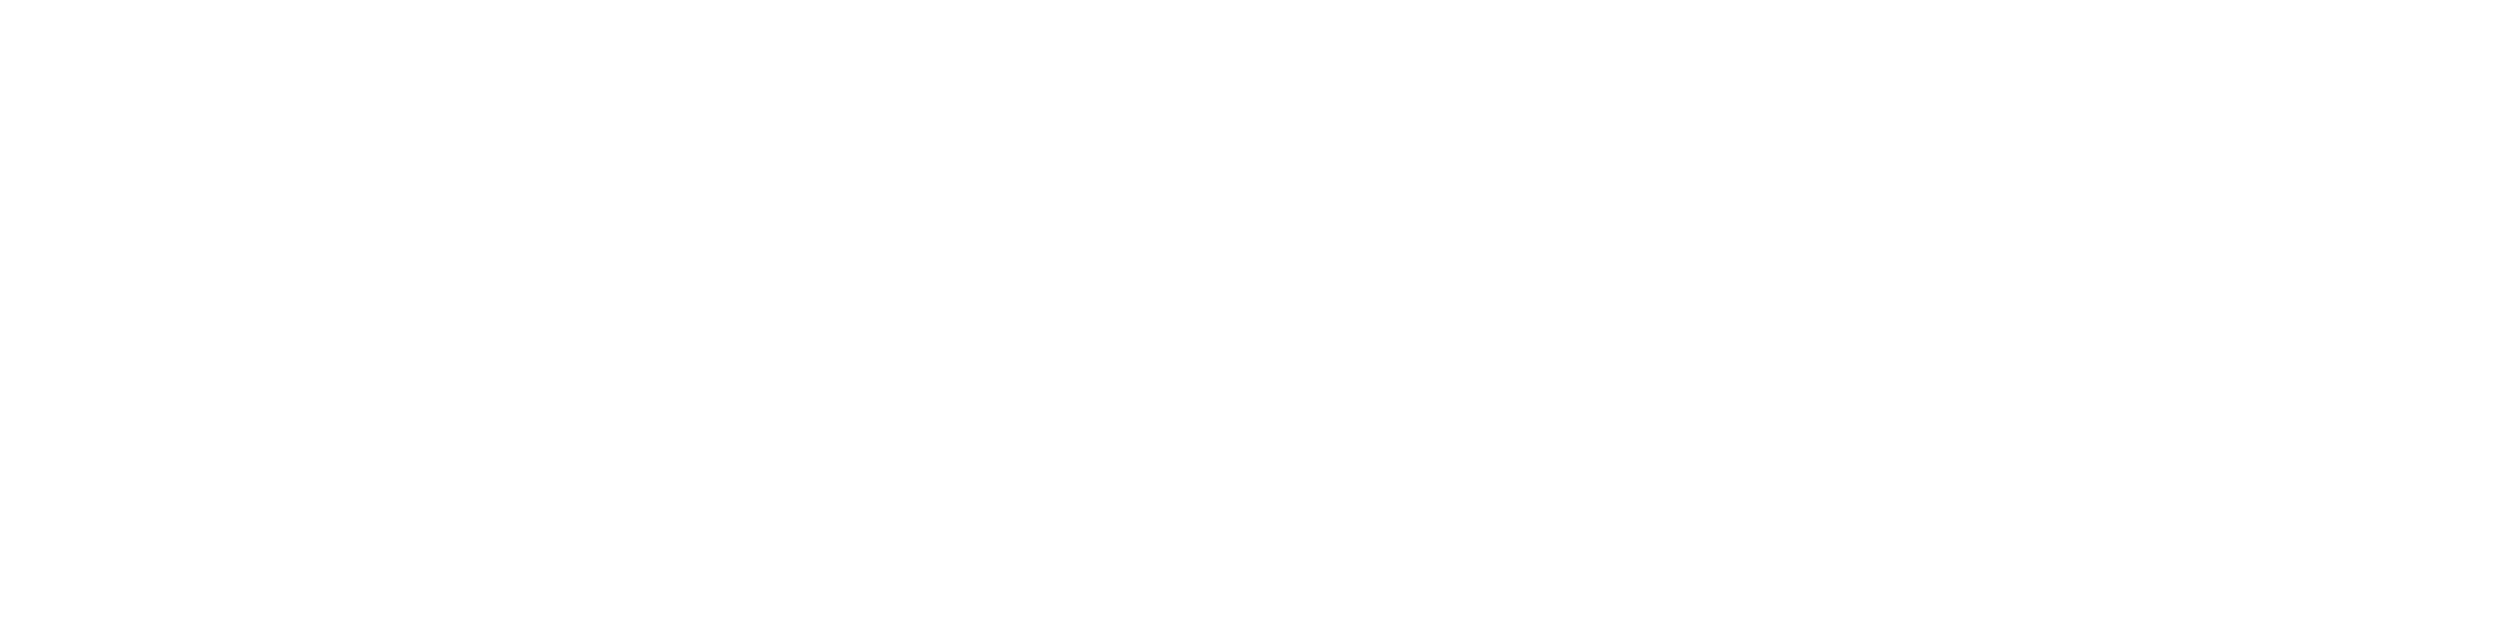 Consumer-Survey-Banner-Logos